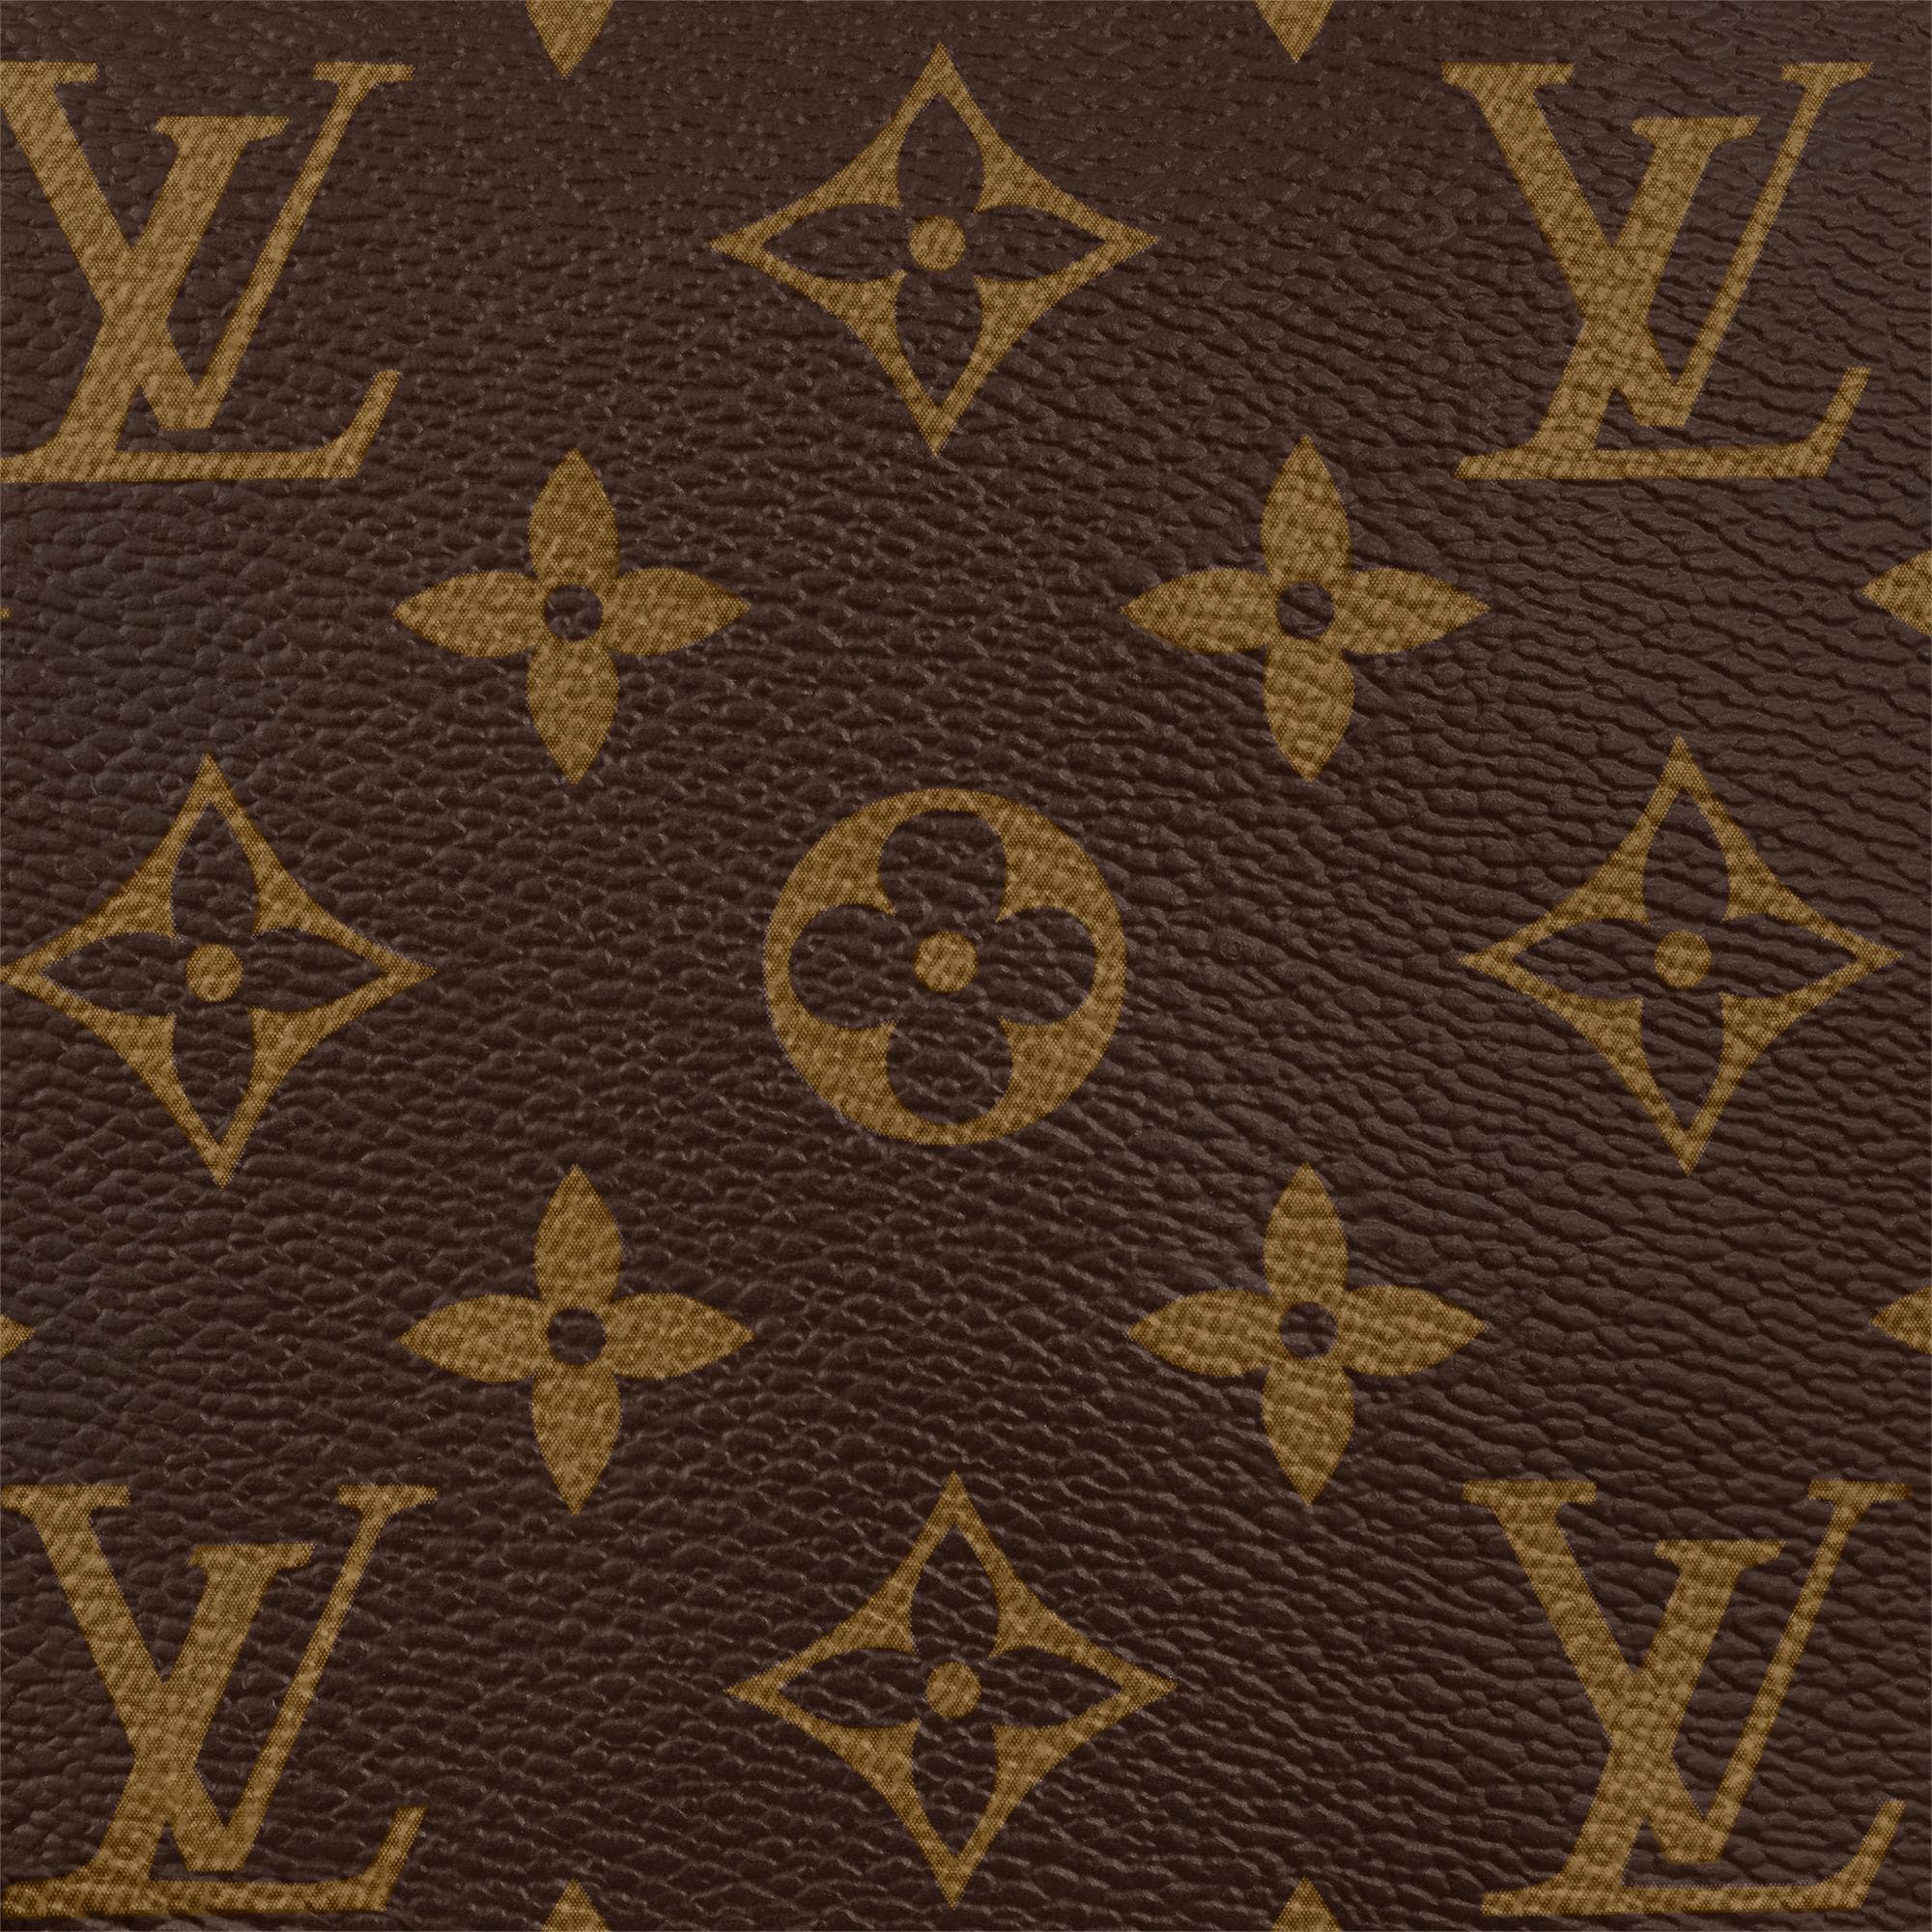 Authentic LOUIS VUITTON Monogram Macassar Avenue sling bag M45897 Shoulder  ba